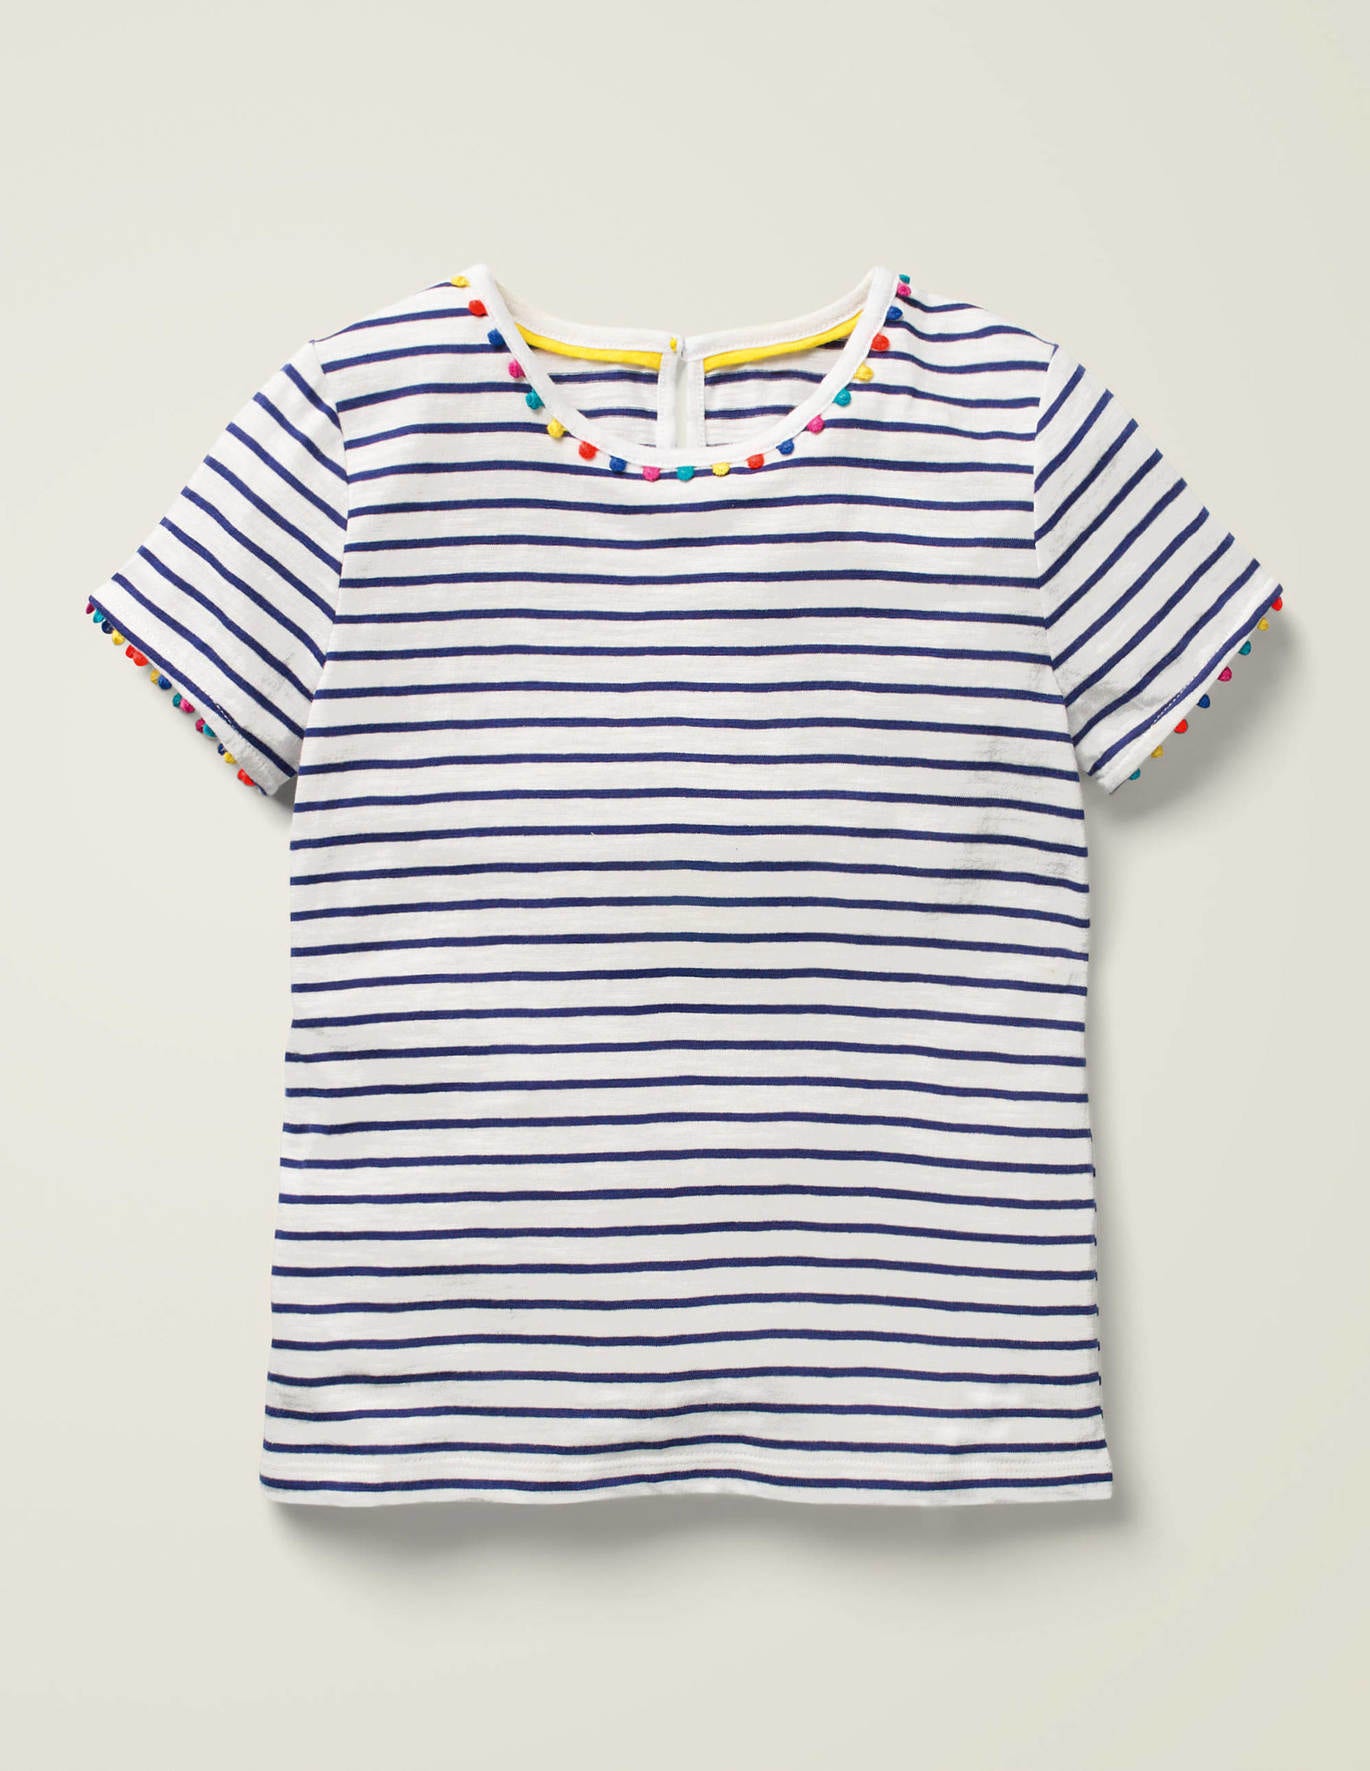 Boden Charlie Pom Jersey T-shirt - Indigo Navy/Ivory